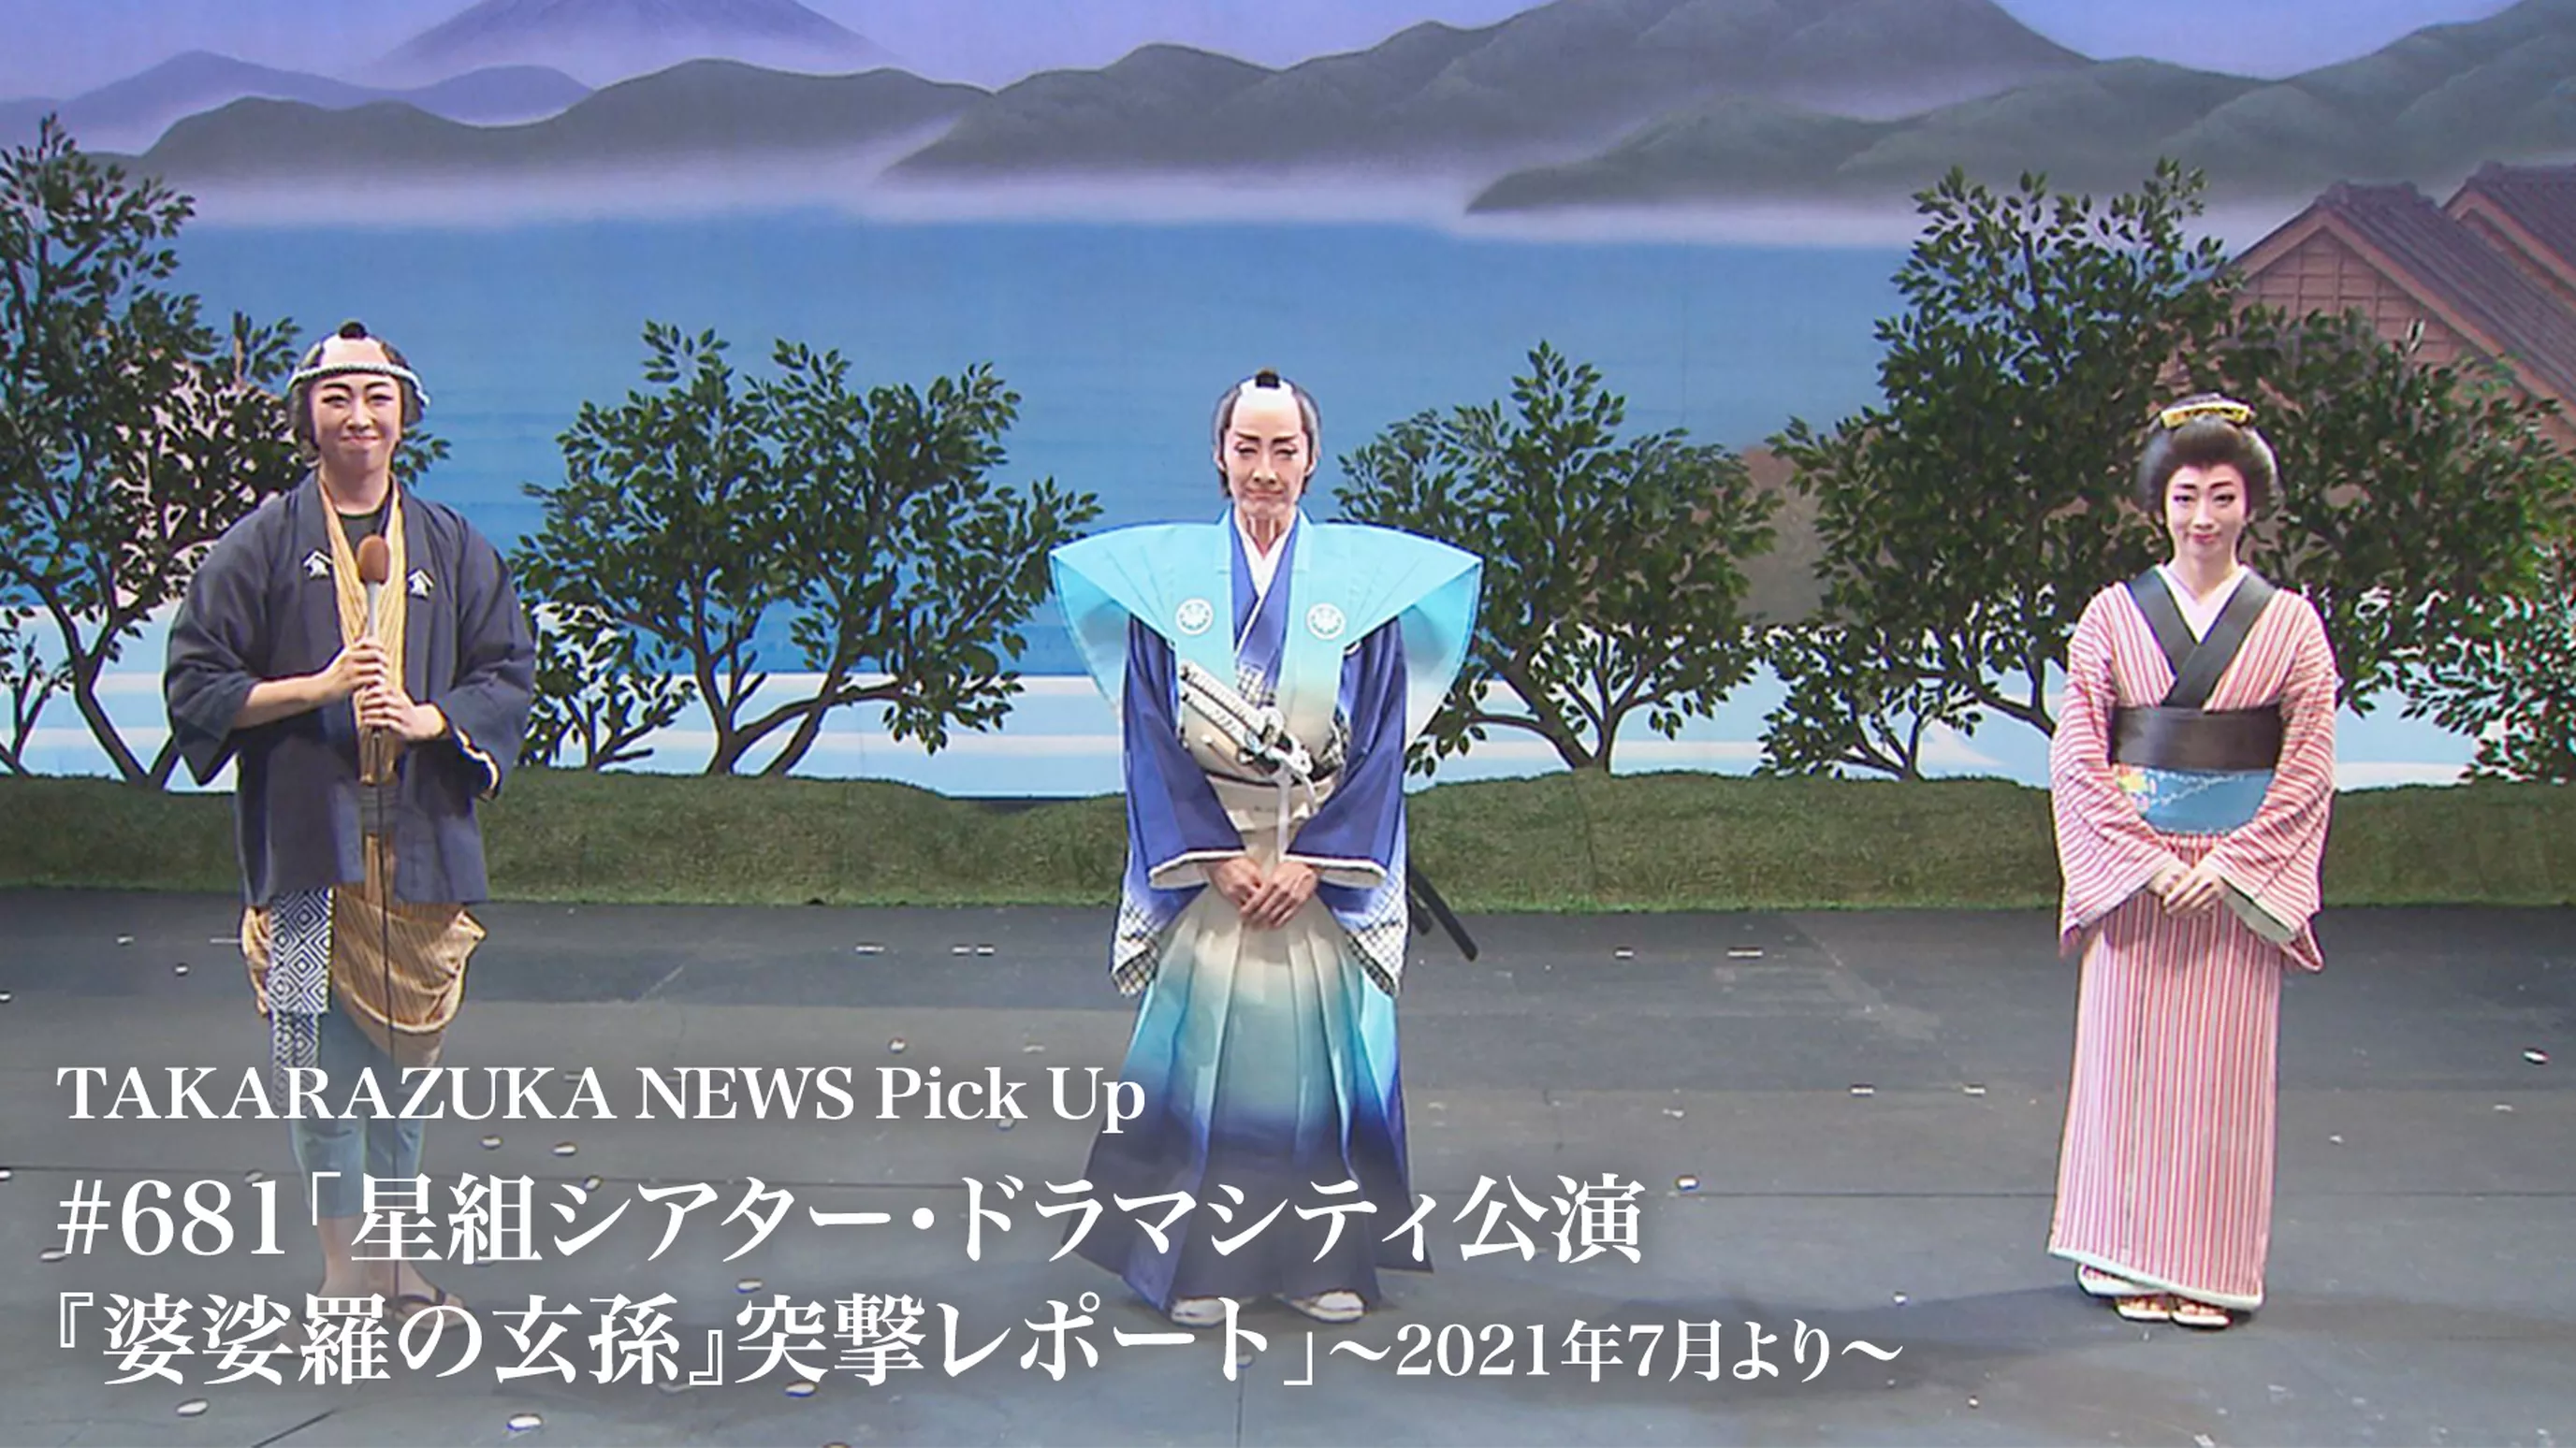 TAKARAZUKA NEWS Pick Up #681「星組シアター・ドラマシティ公演『婆娑羅の玄孫』突撃レポート」～2021年7月より～